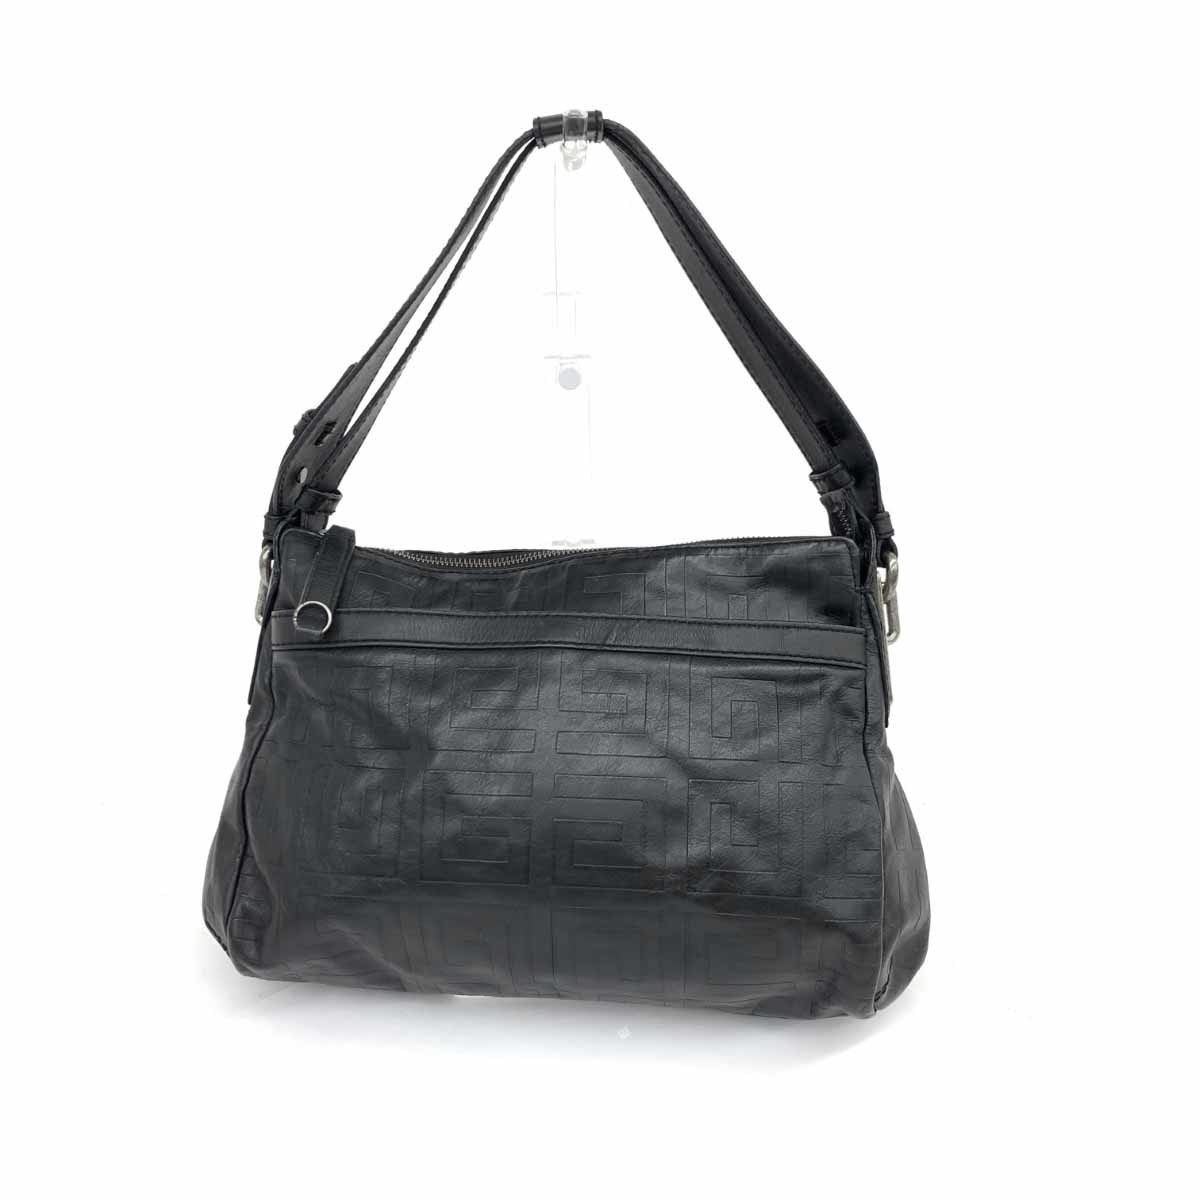 ◆GIVENCHY ジバンシィ ワンショルダーバッグ◆ ブラック レザー 4Gロゴ型押し レディース 肩掛け bag 鞄